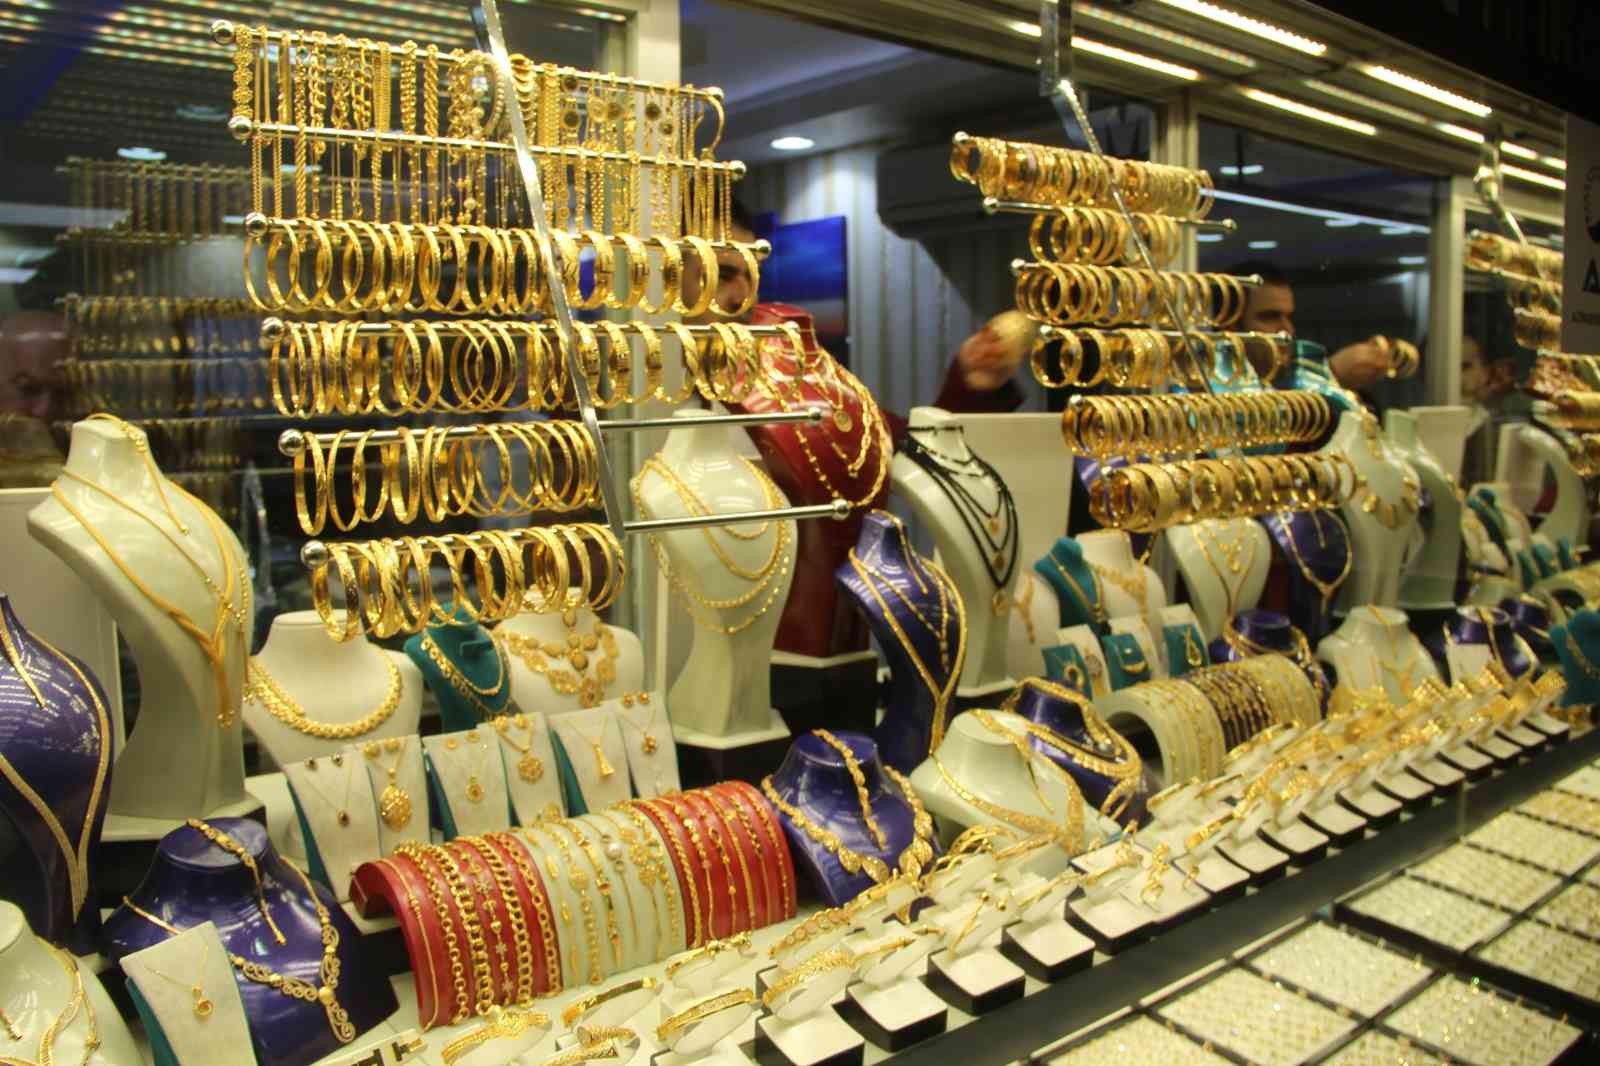 Kuyumculardan “Altına yatırım yapan zarar etmez” tavsiyesi #malatya